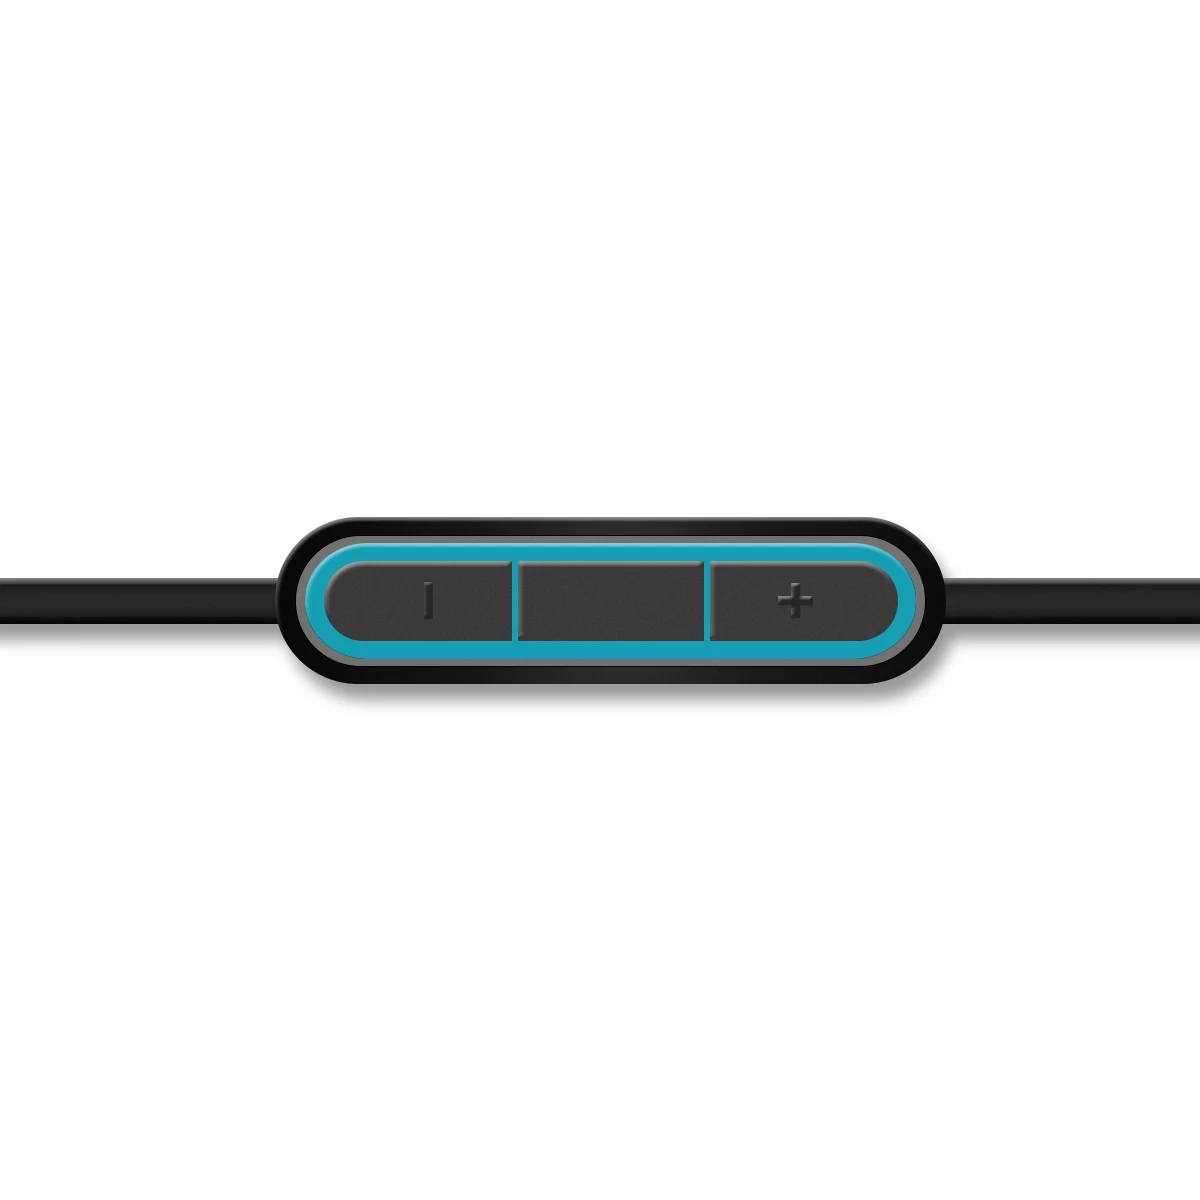 CLAITE 2,5 мм до 3,5 мм аудио кабель для Bose QC25 тихий удобный кабель для наушников с микрофоном 1,5 м кабель для Iphone Android